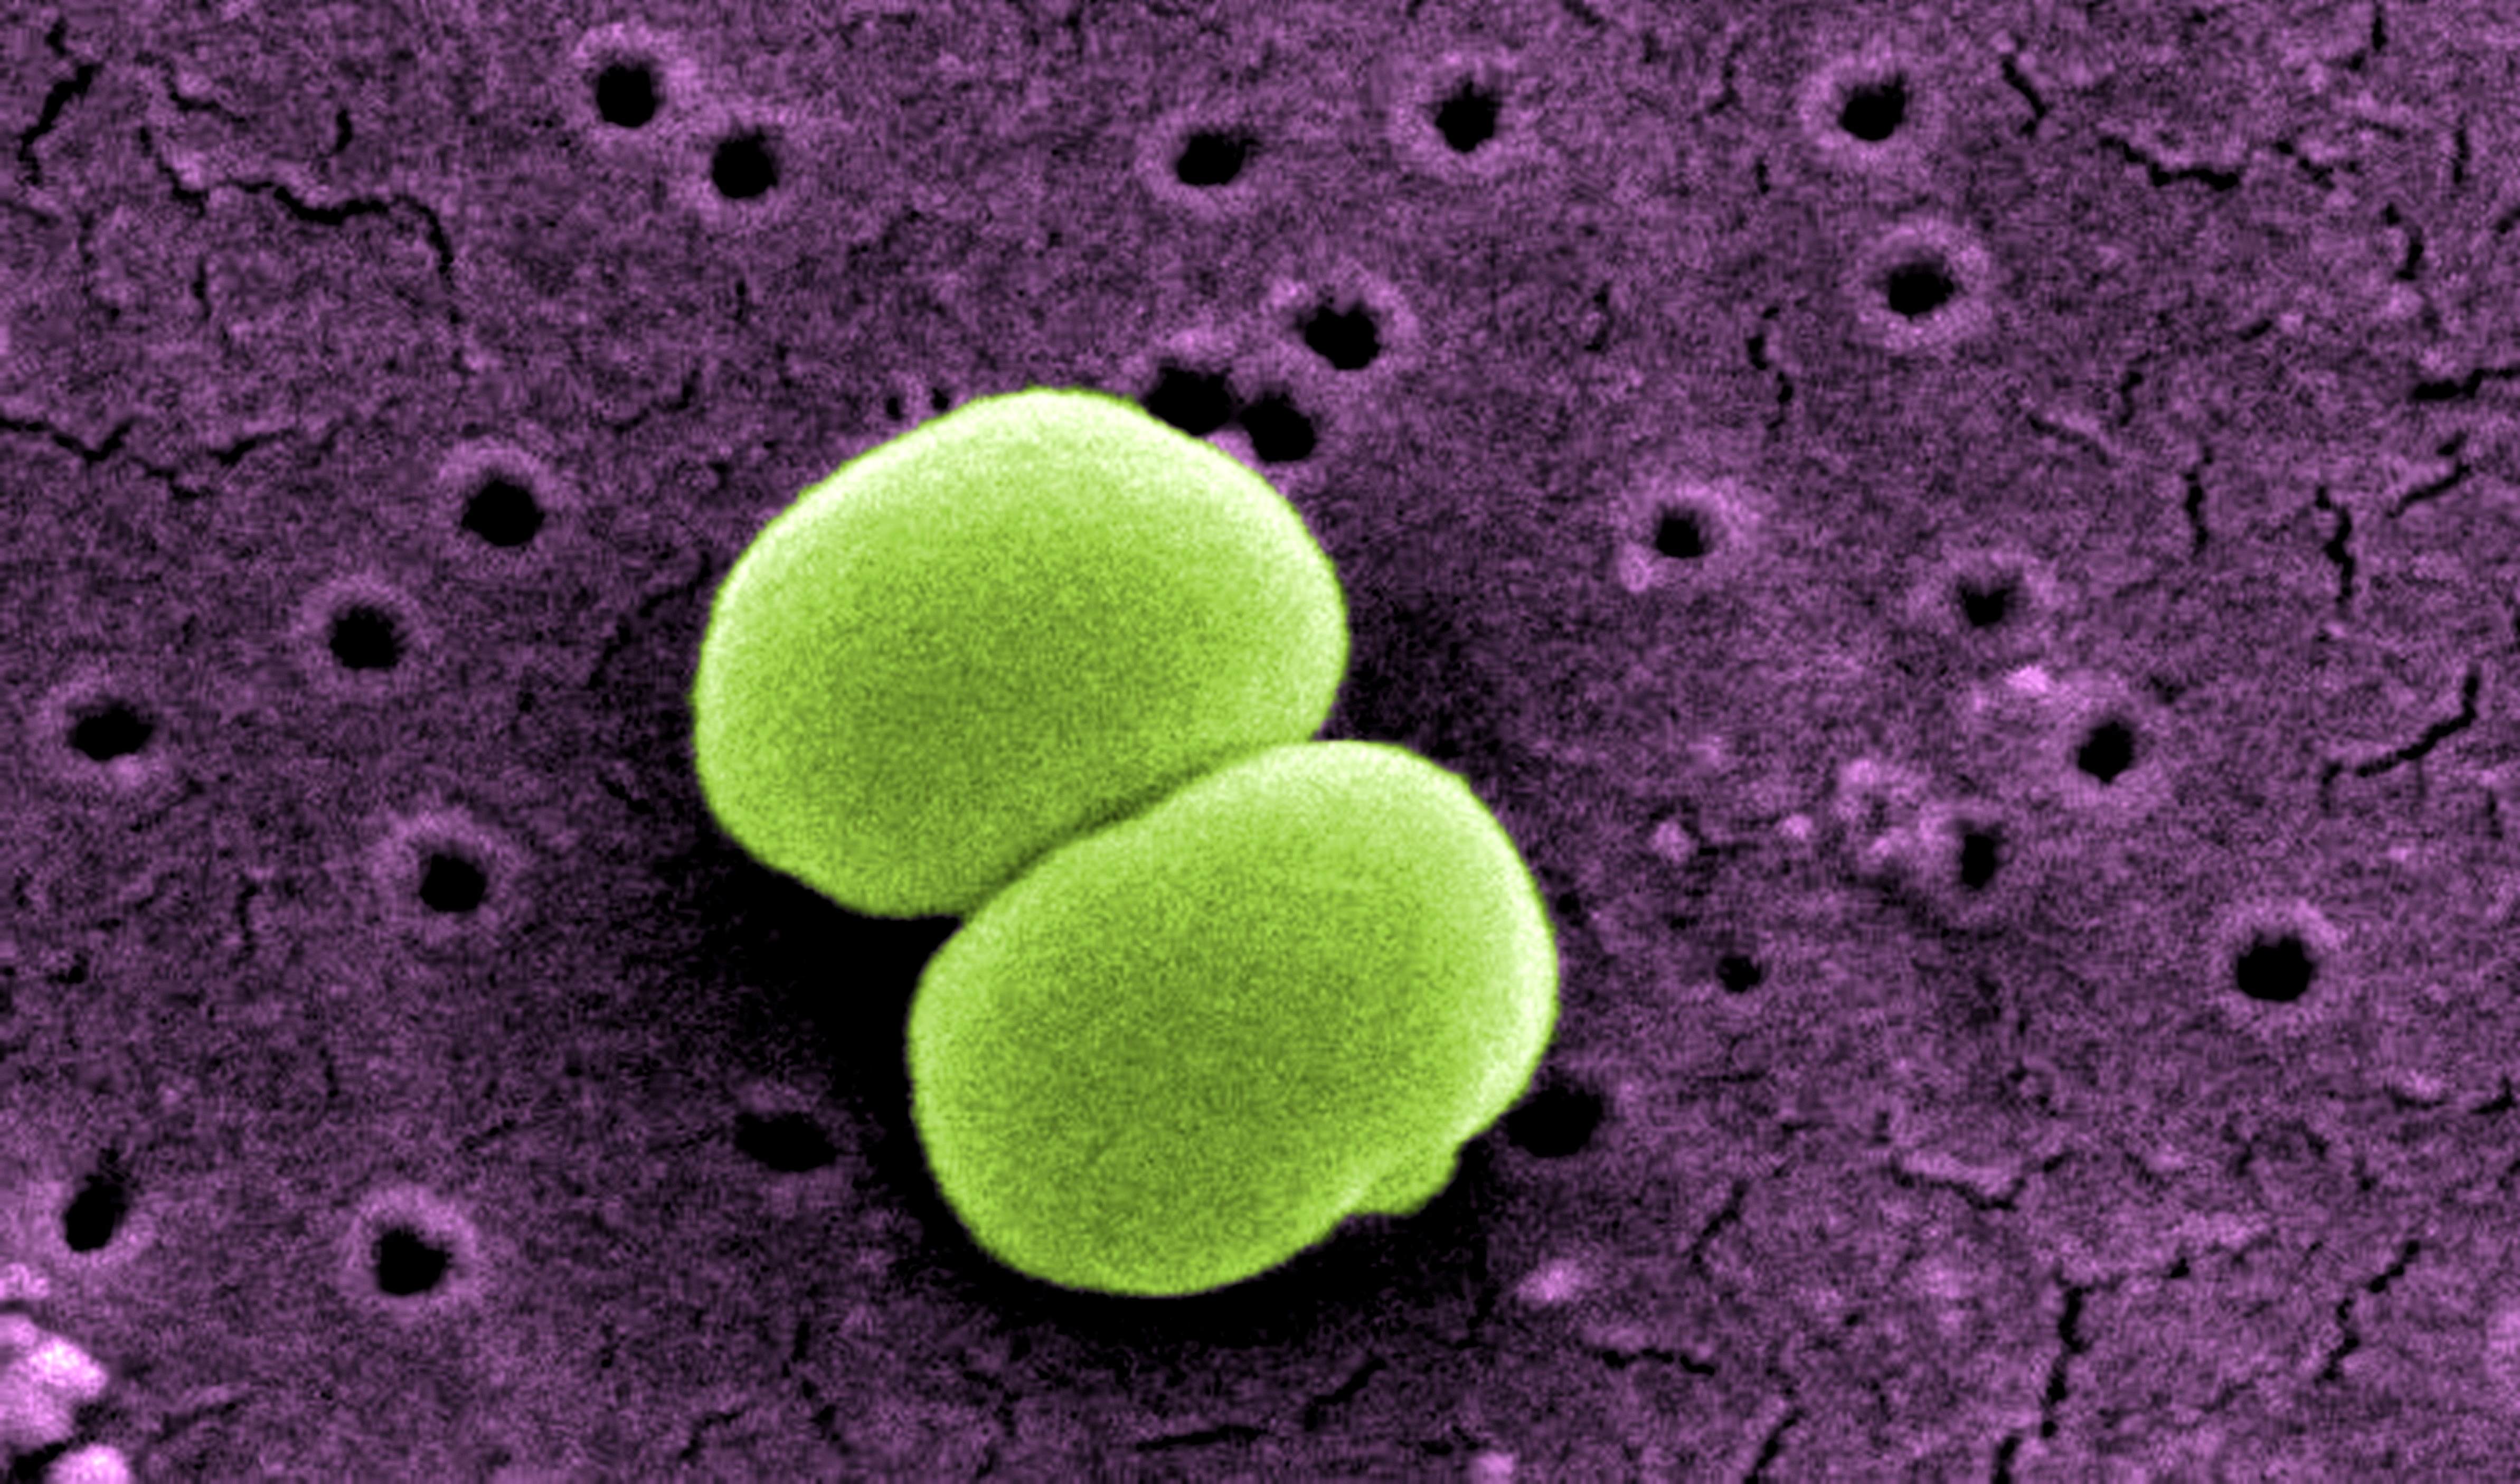 two staphylococcus epidermidis bacteria